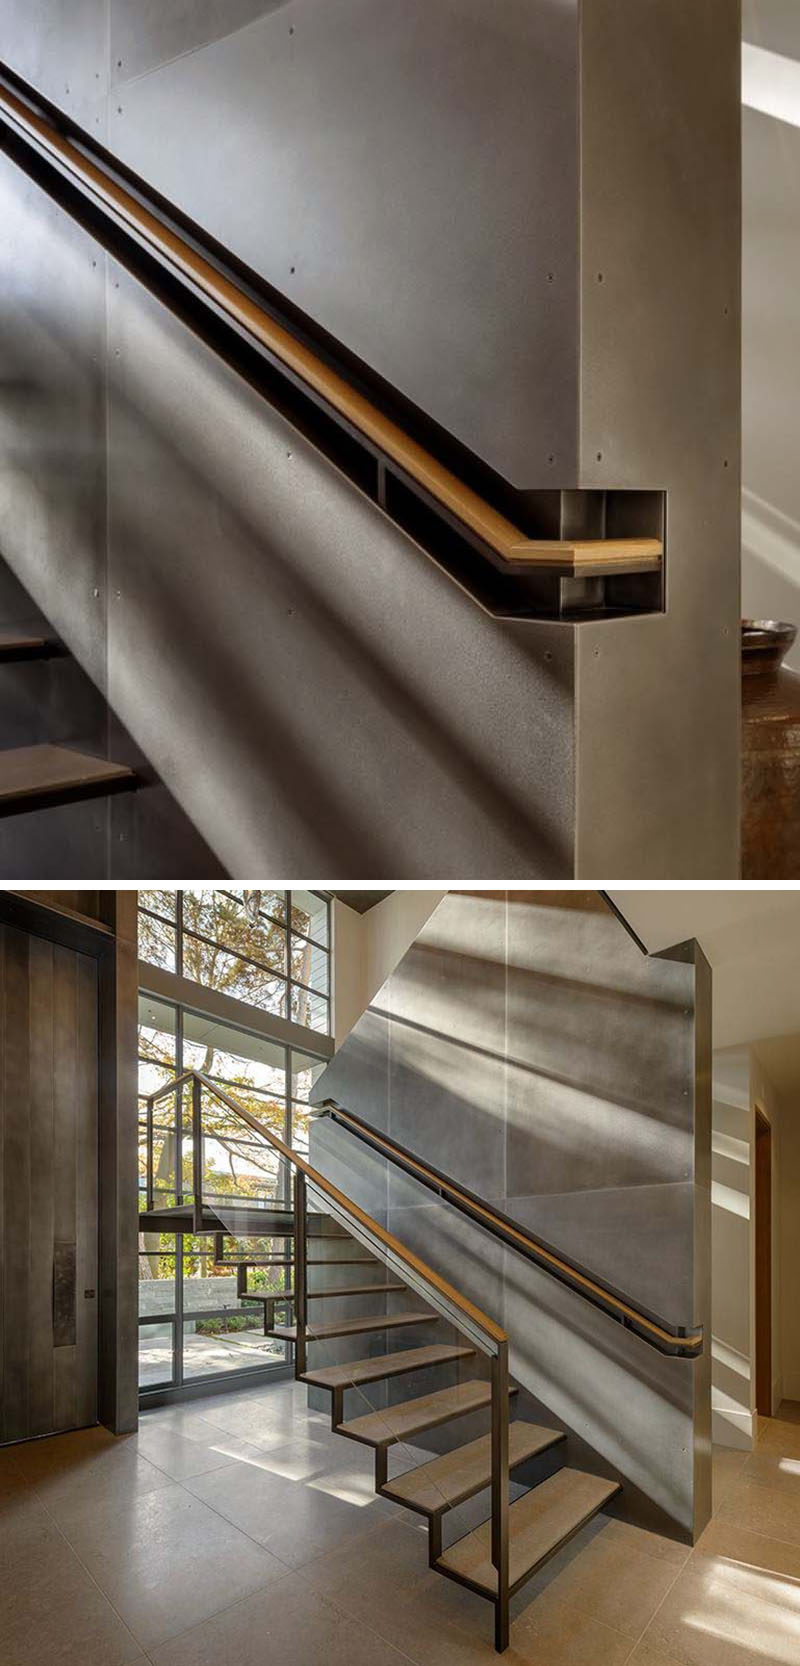 Идеи дизайна лестницы - 9 примеров встроенных перил // Эти деревянные и стальные перила встроены в секцию стены для придания более индустриального вида. #BuiltInHandrail #HandrailIdeas #HandrailDesign #StairDesign # Поручни